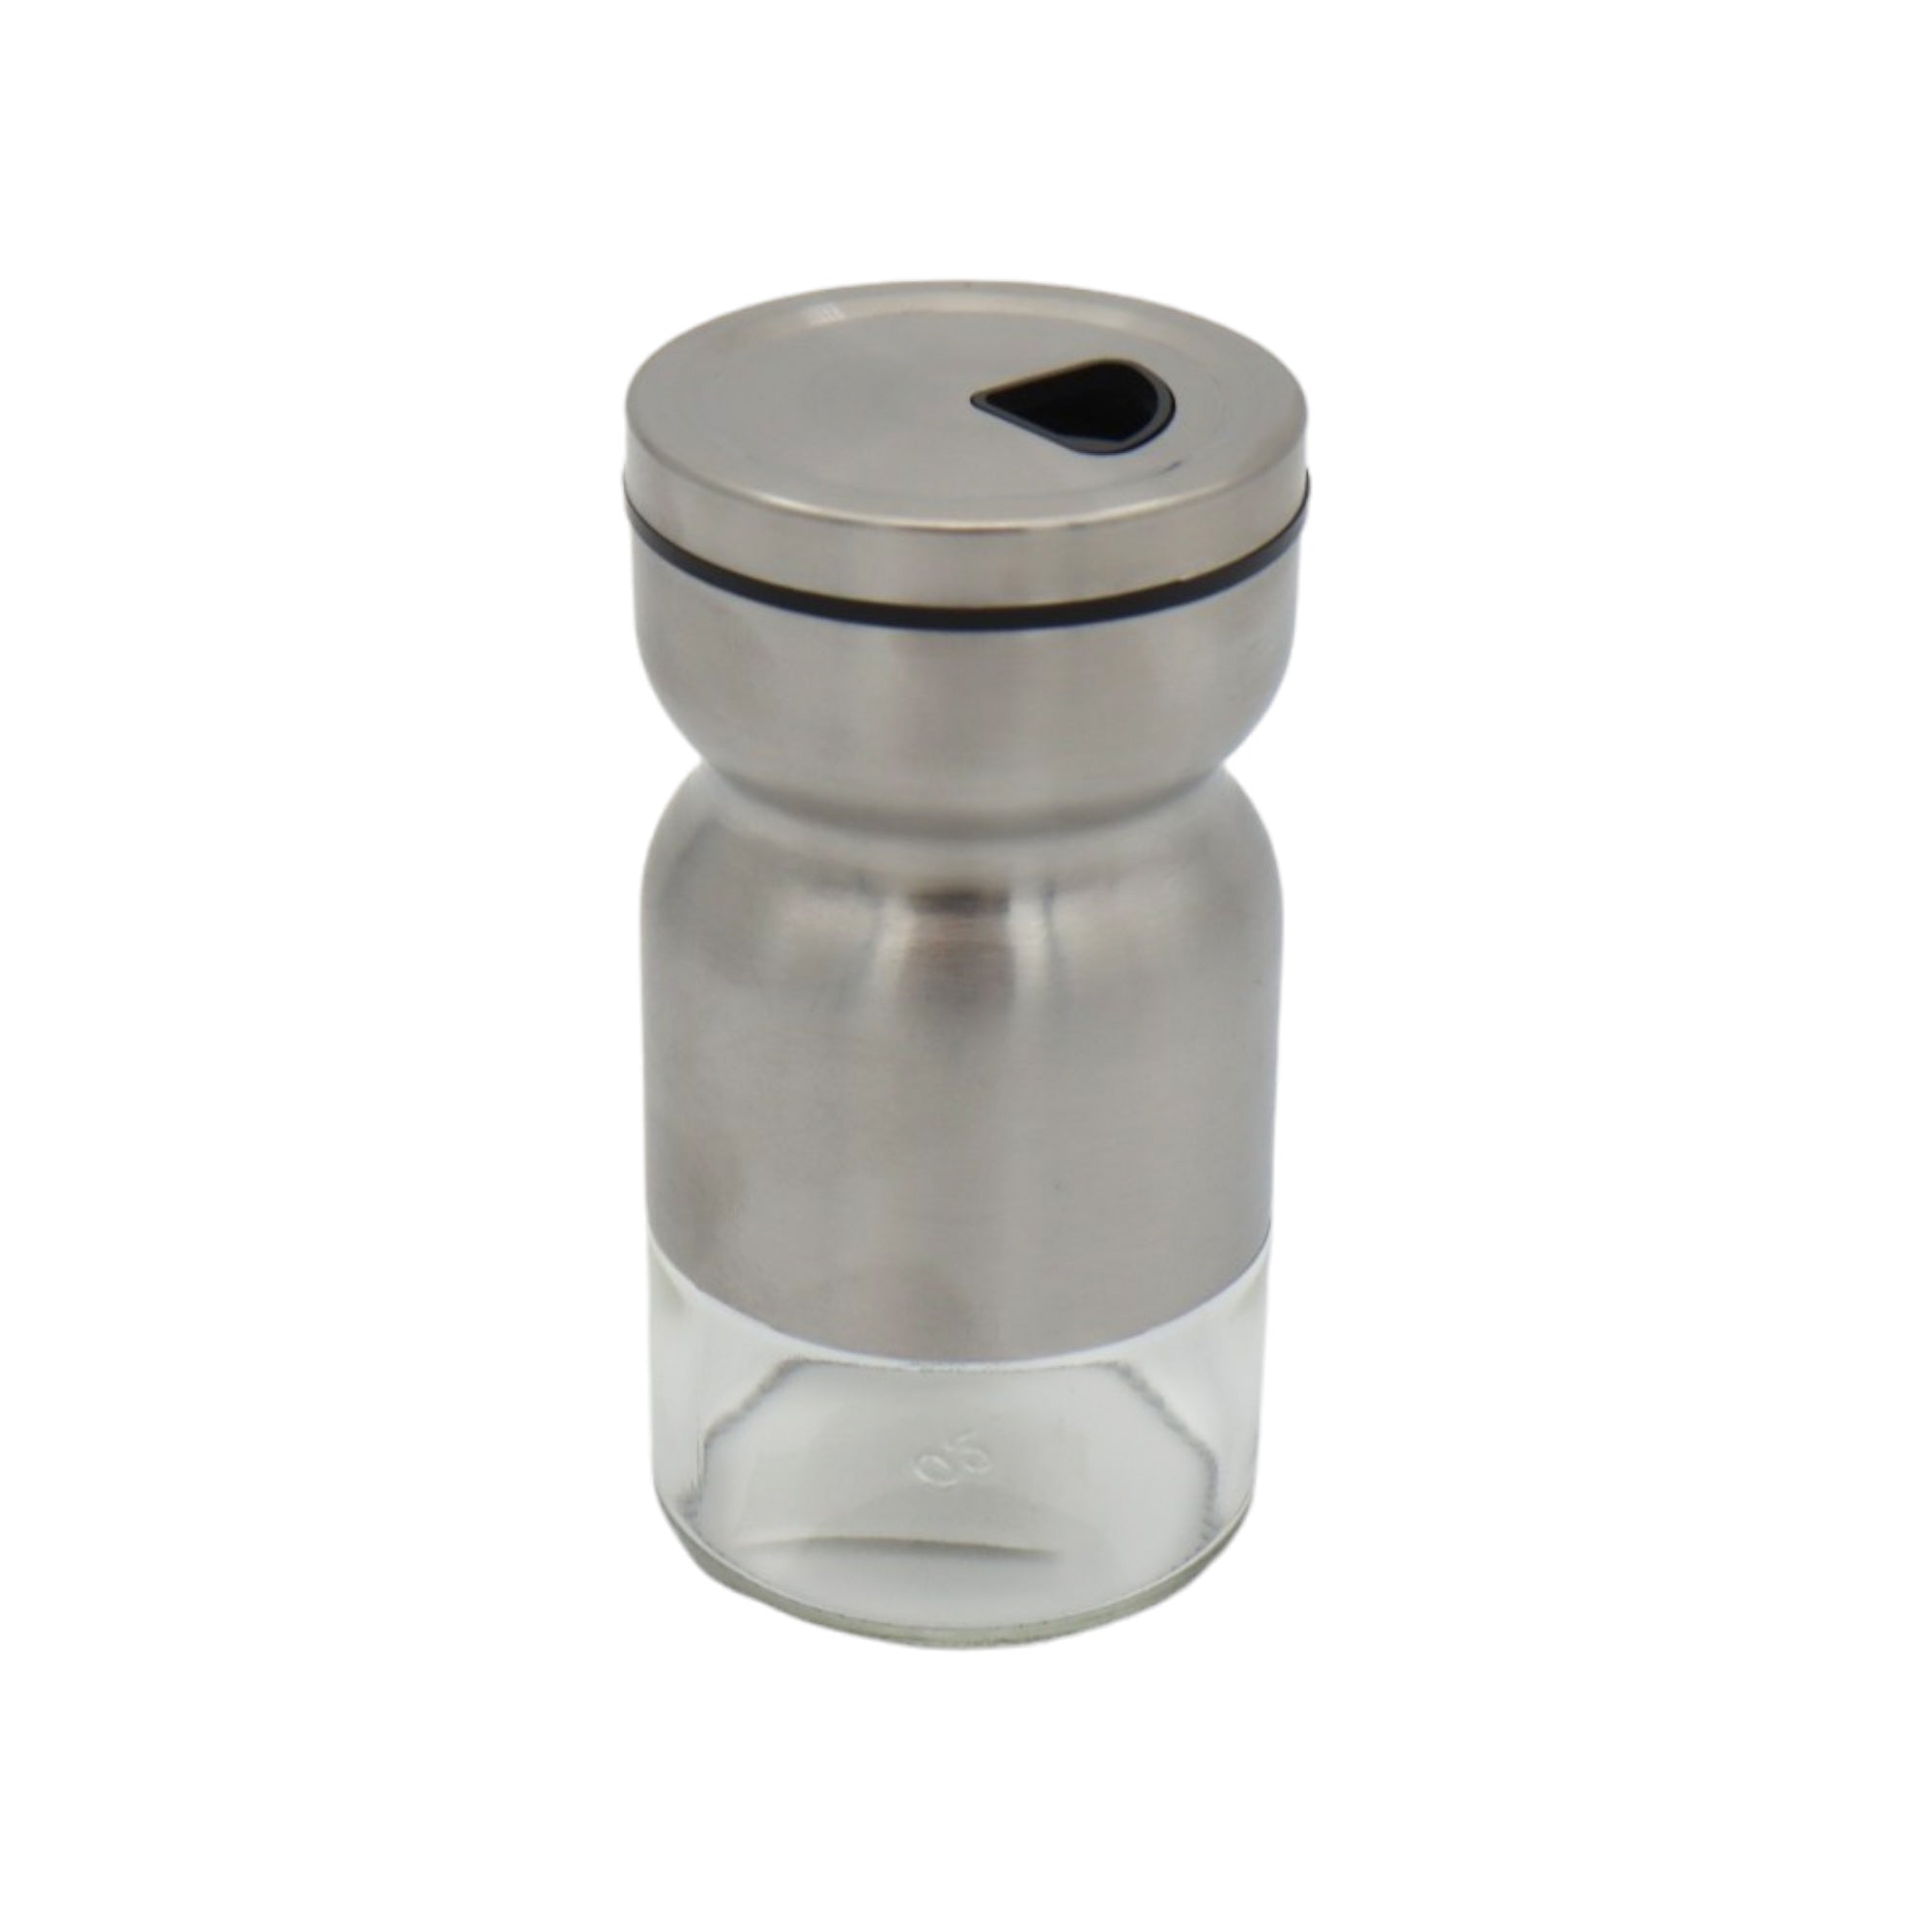 Stainless Steel Spice Shaker Bottle